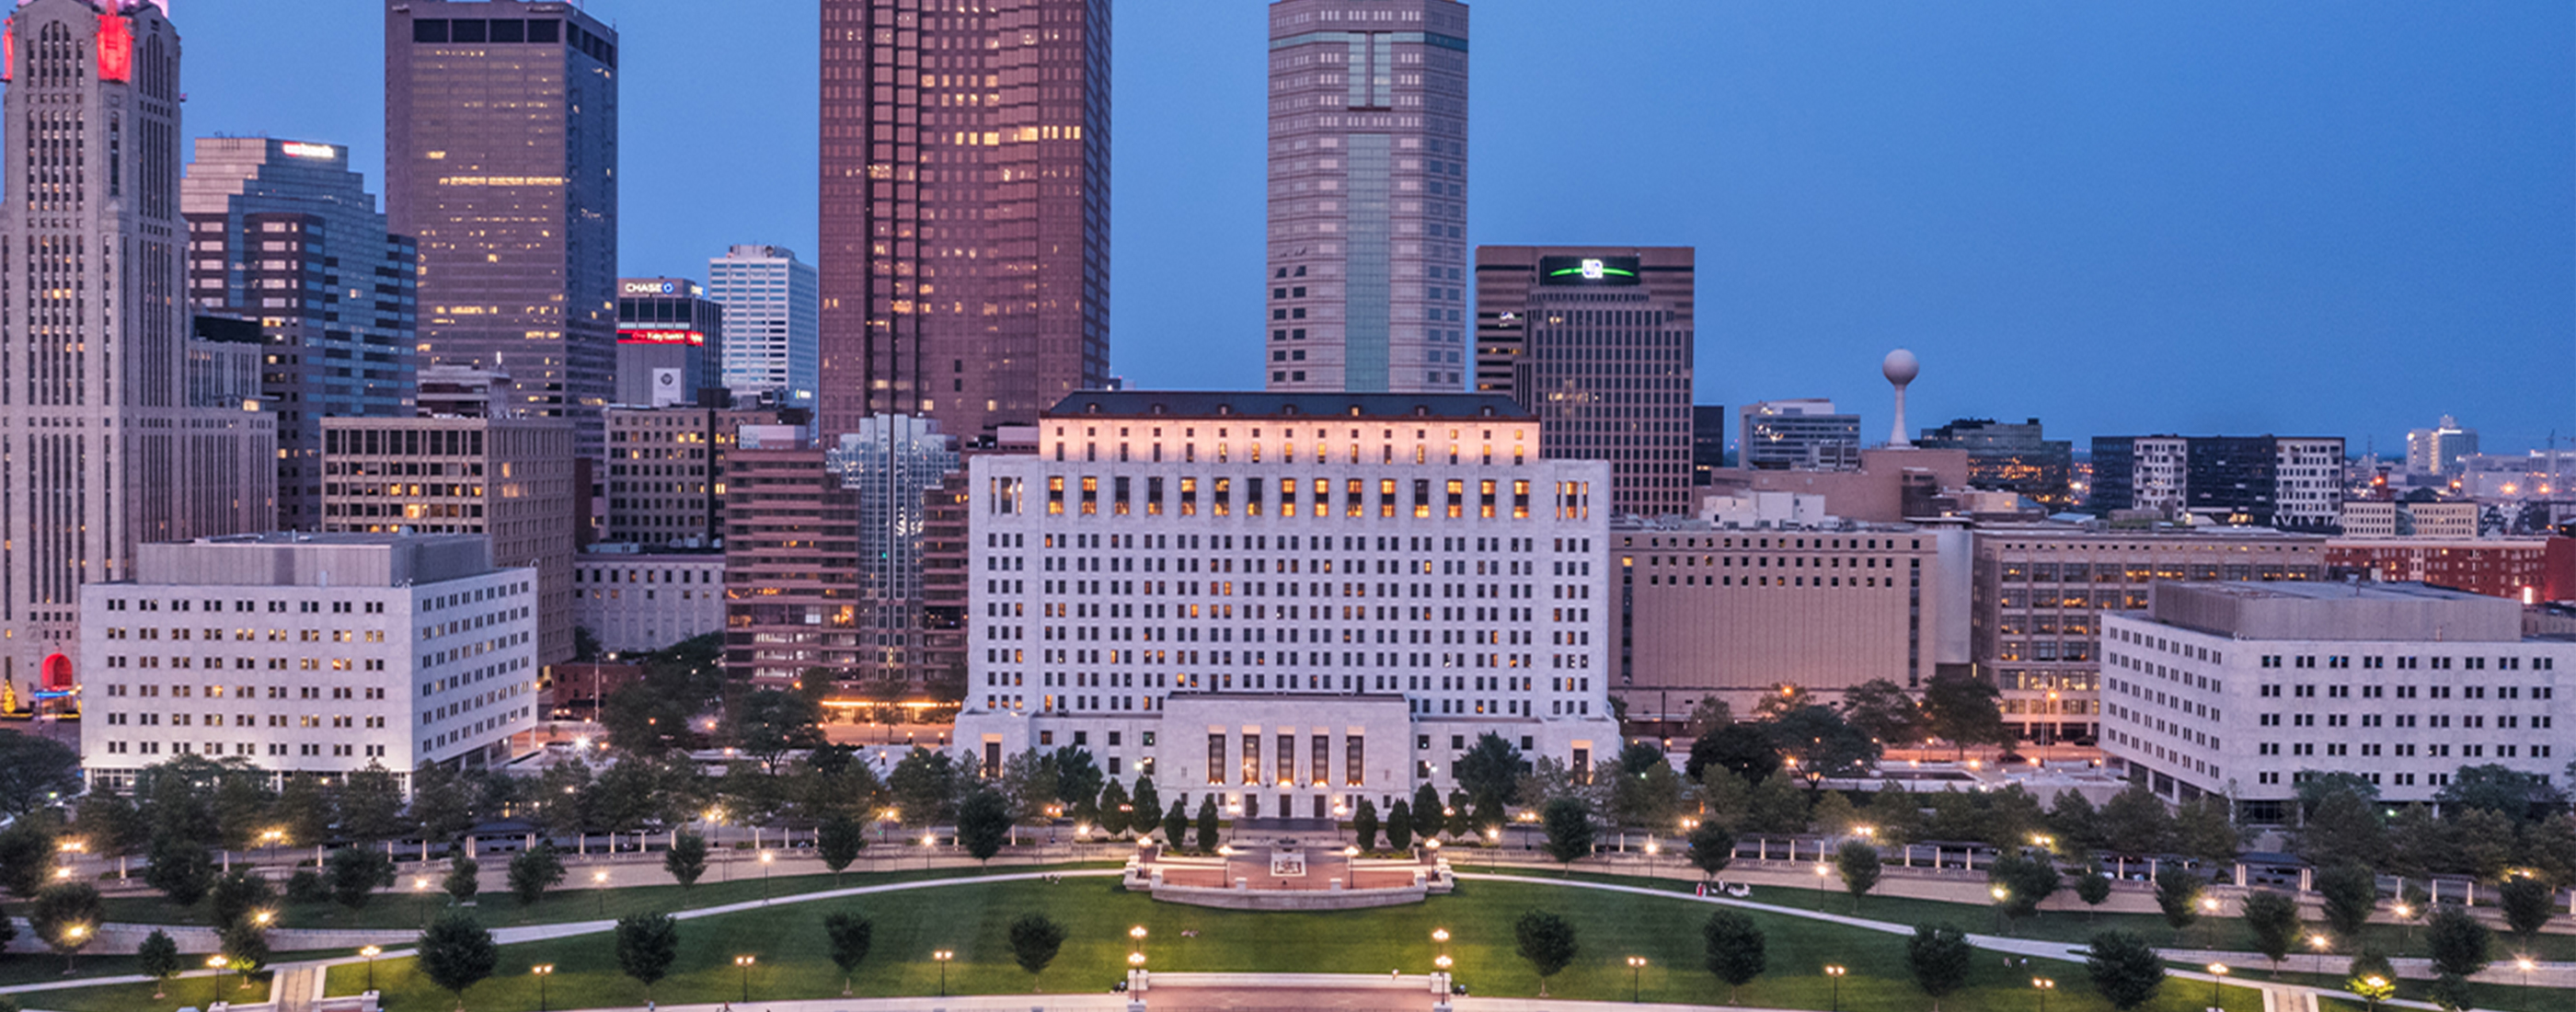 Exterior shot of the Ohio Supreme Court in Columbus, Ohio